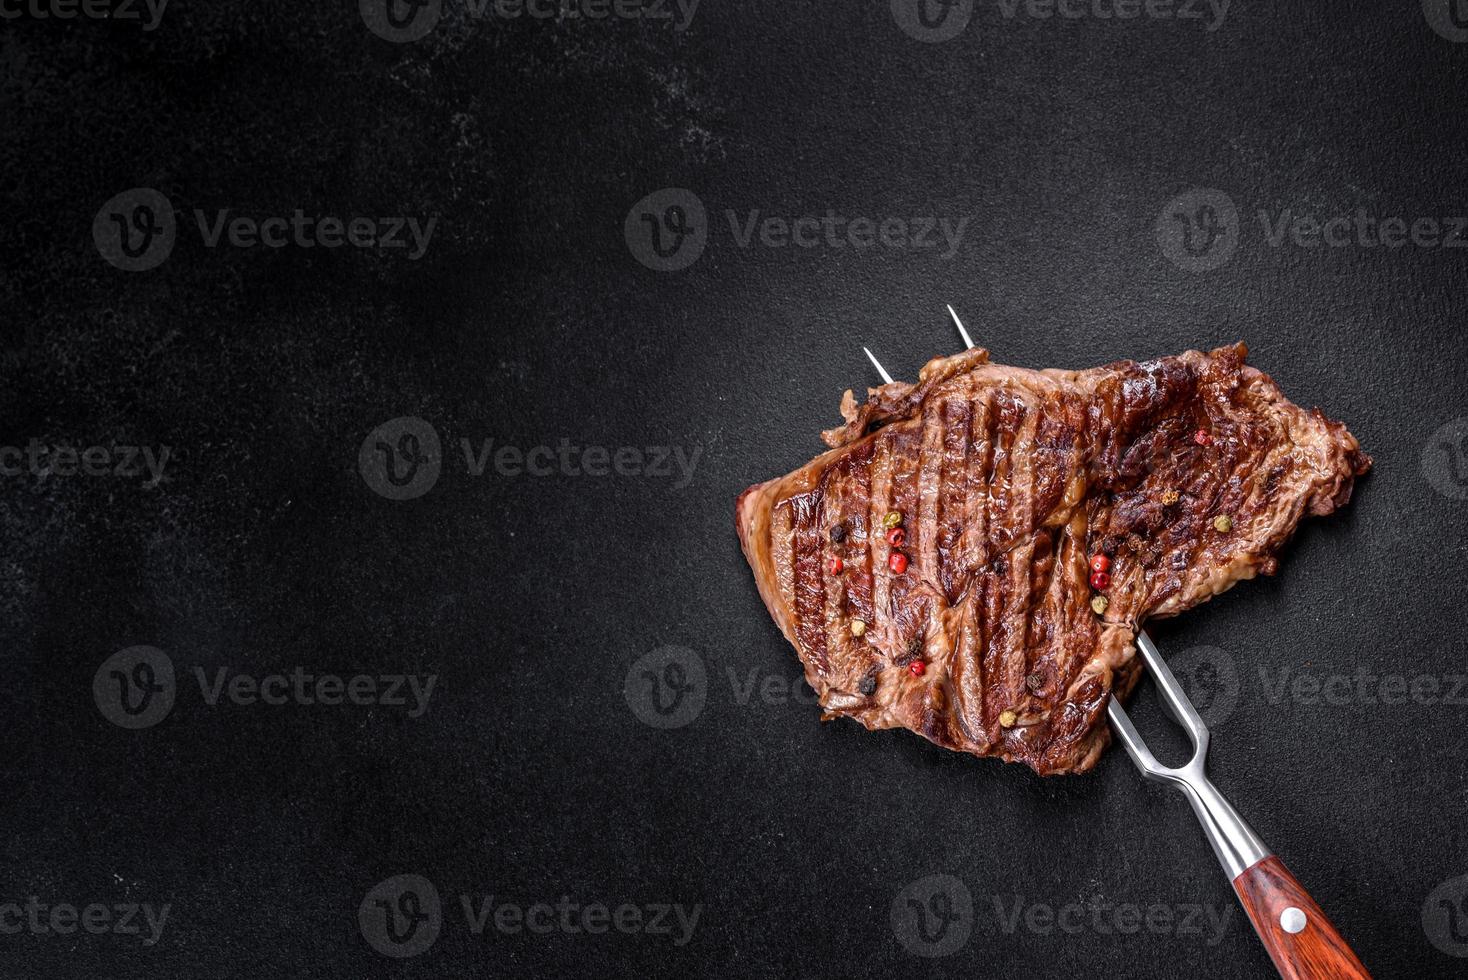 läcker saftig färsk nötköttbiff med kryddor och örter på en mörk konkret bakgrund foto